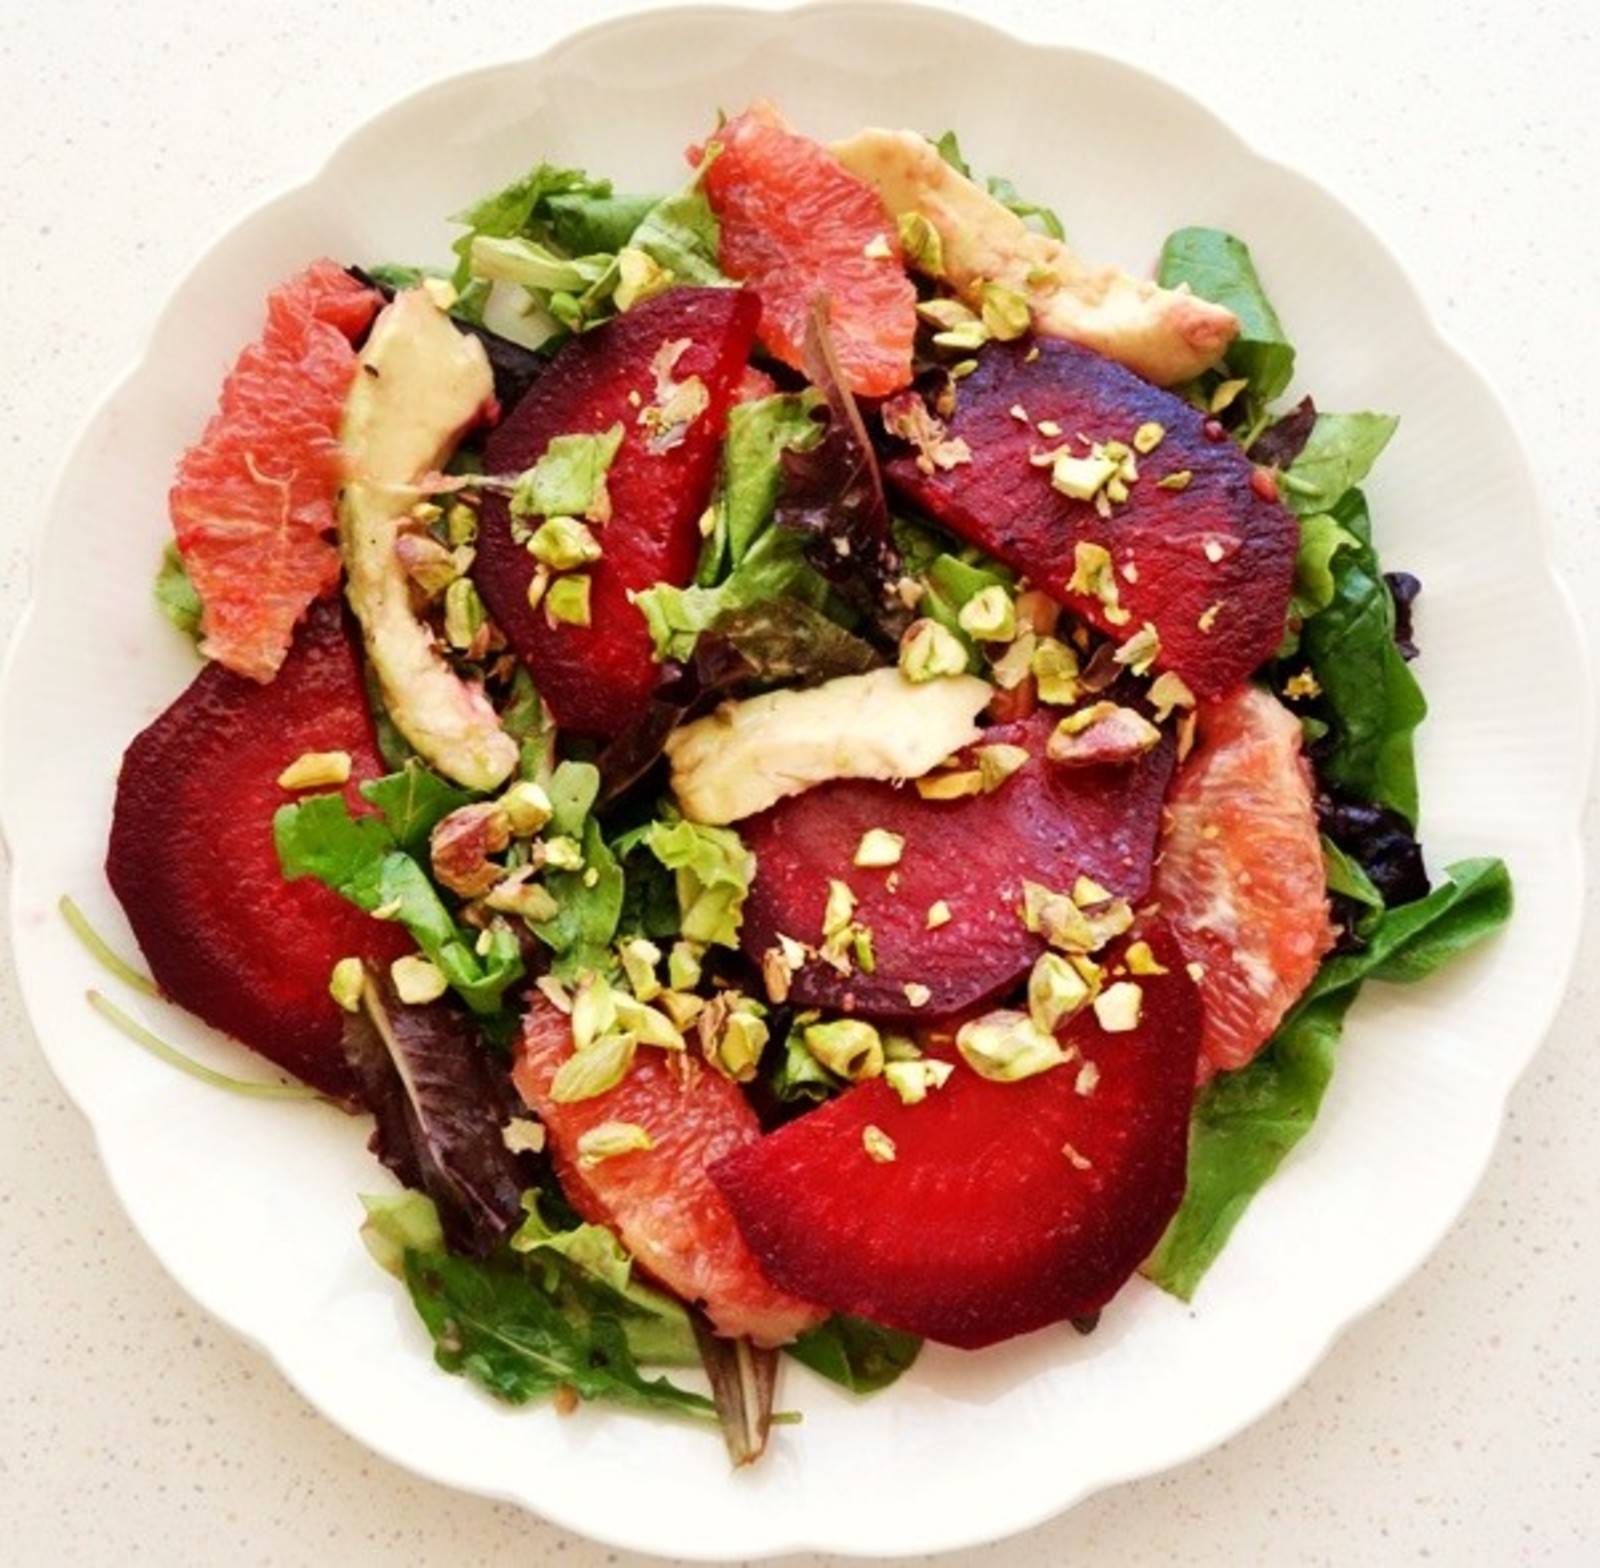 Rote Rüben Salat mit Grapefruit und Pistazien